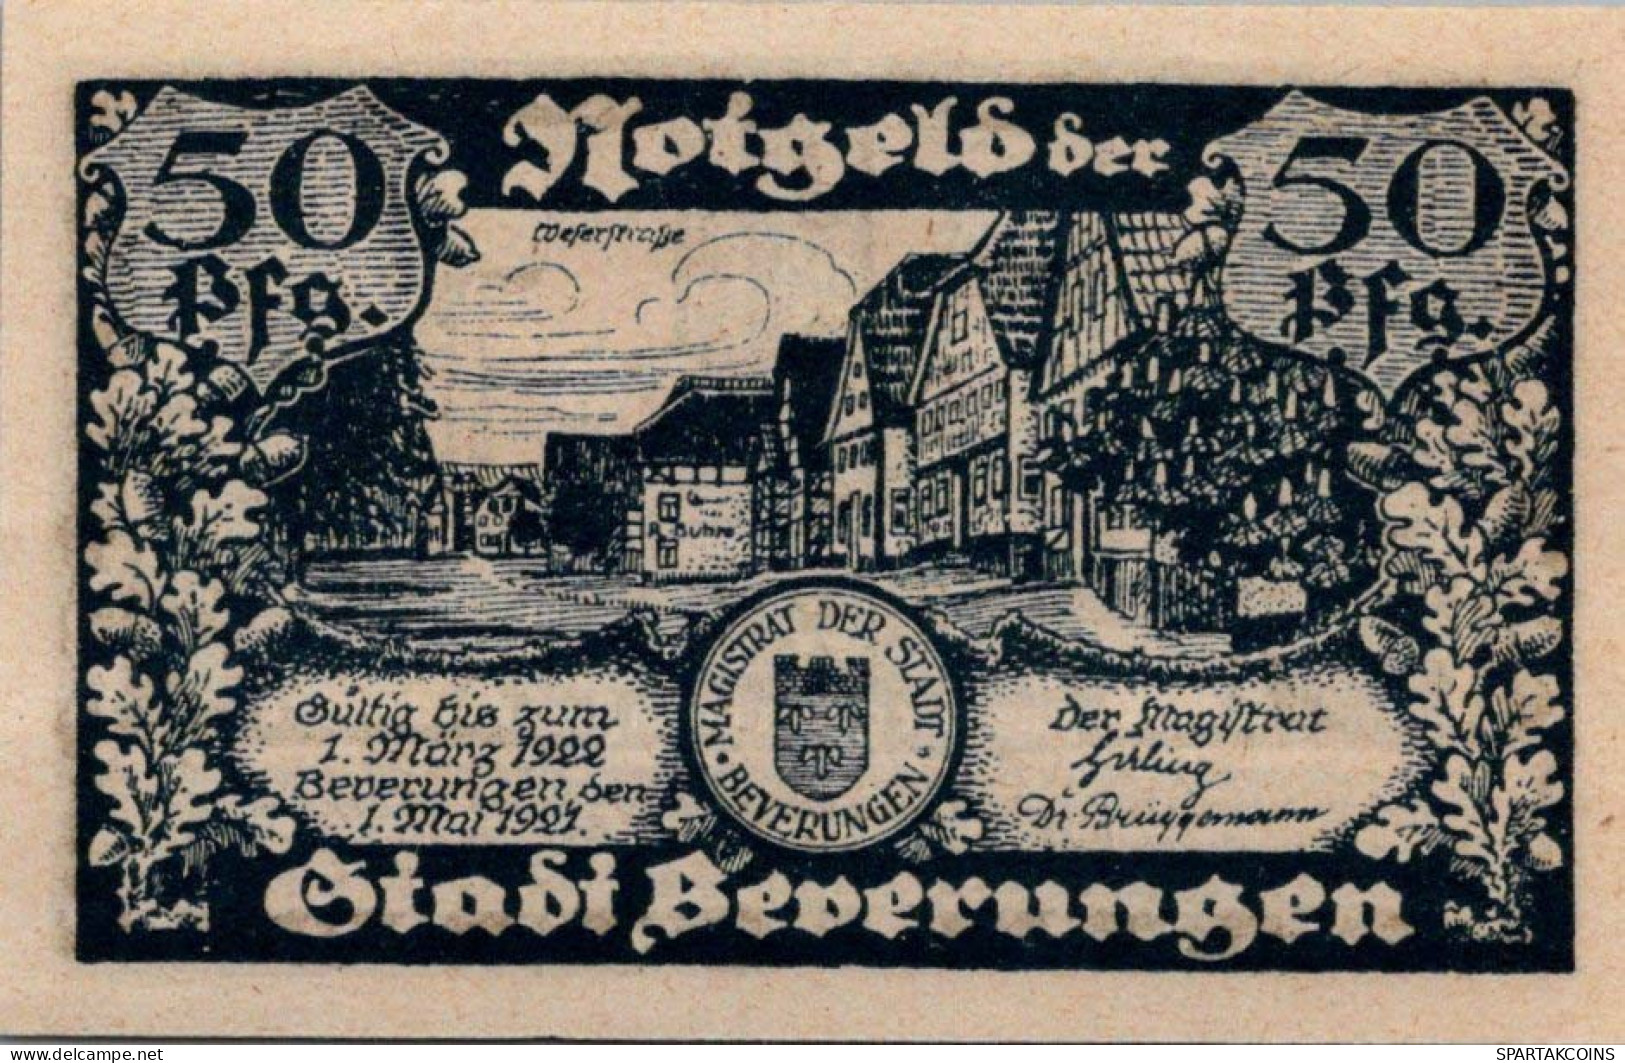 50 PFENNIG 1921 Stadt BEVERUNGEN Westphalia DEUTSCHLAND Notgeld Banknote #PD513 - [11] Local Banknote Issues